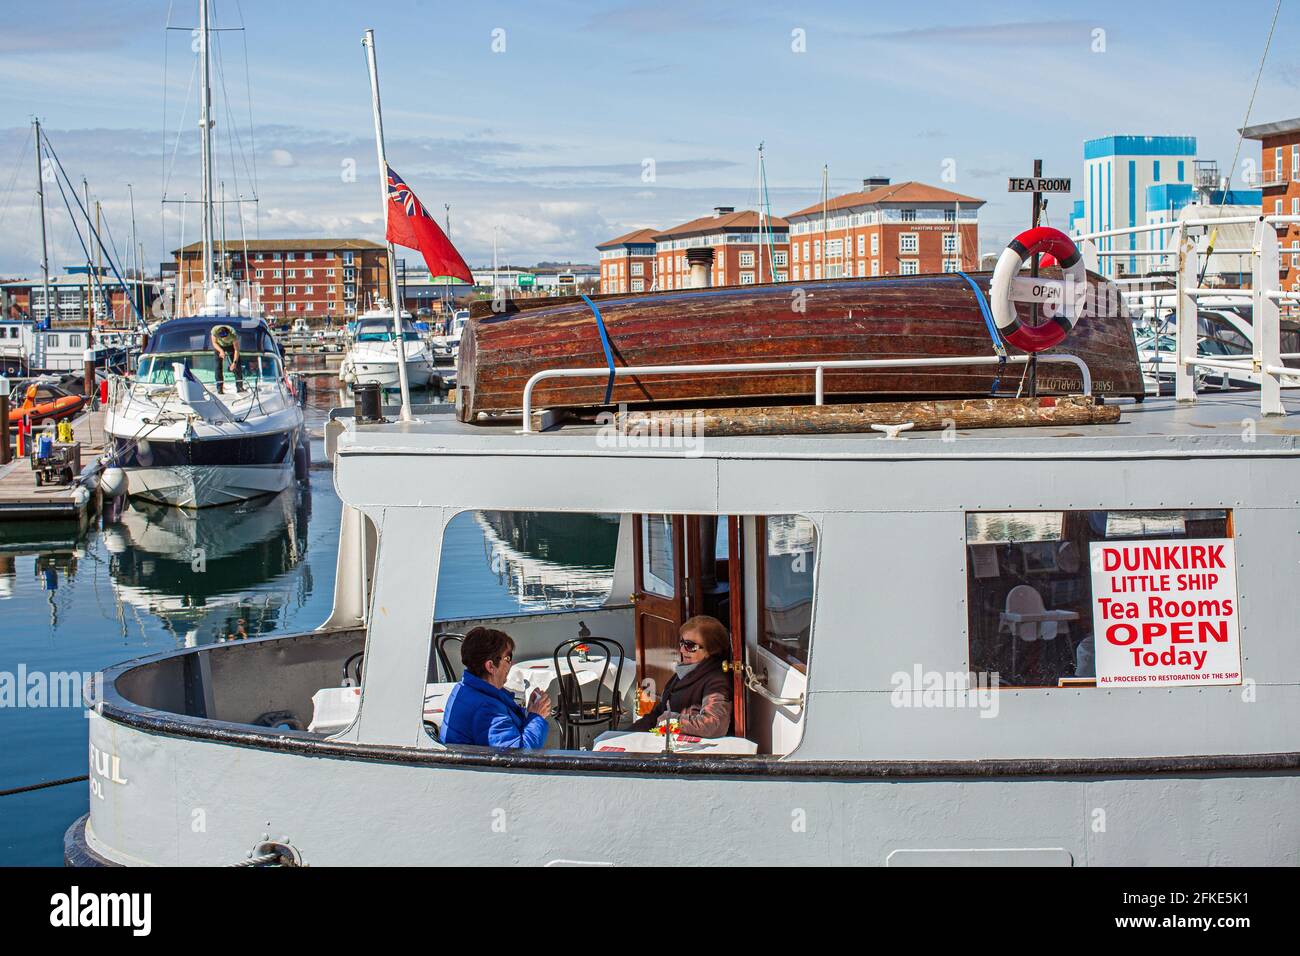 Deux femmes prenant le thé au petit bateau nouvellement restauré de Dunkirk qui a été transformé en café-restaurant à la marina de Hartlepool, Angleterre, Royaume-Uni. Banque D'Images